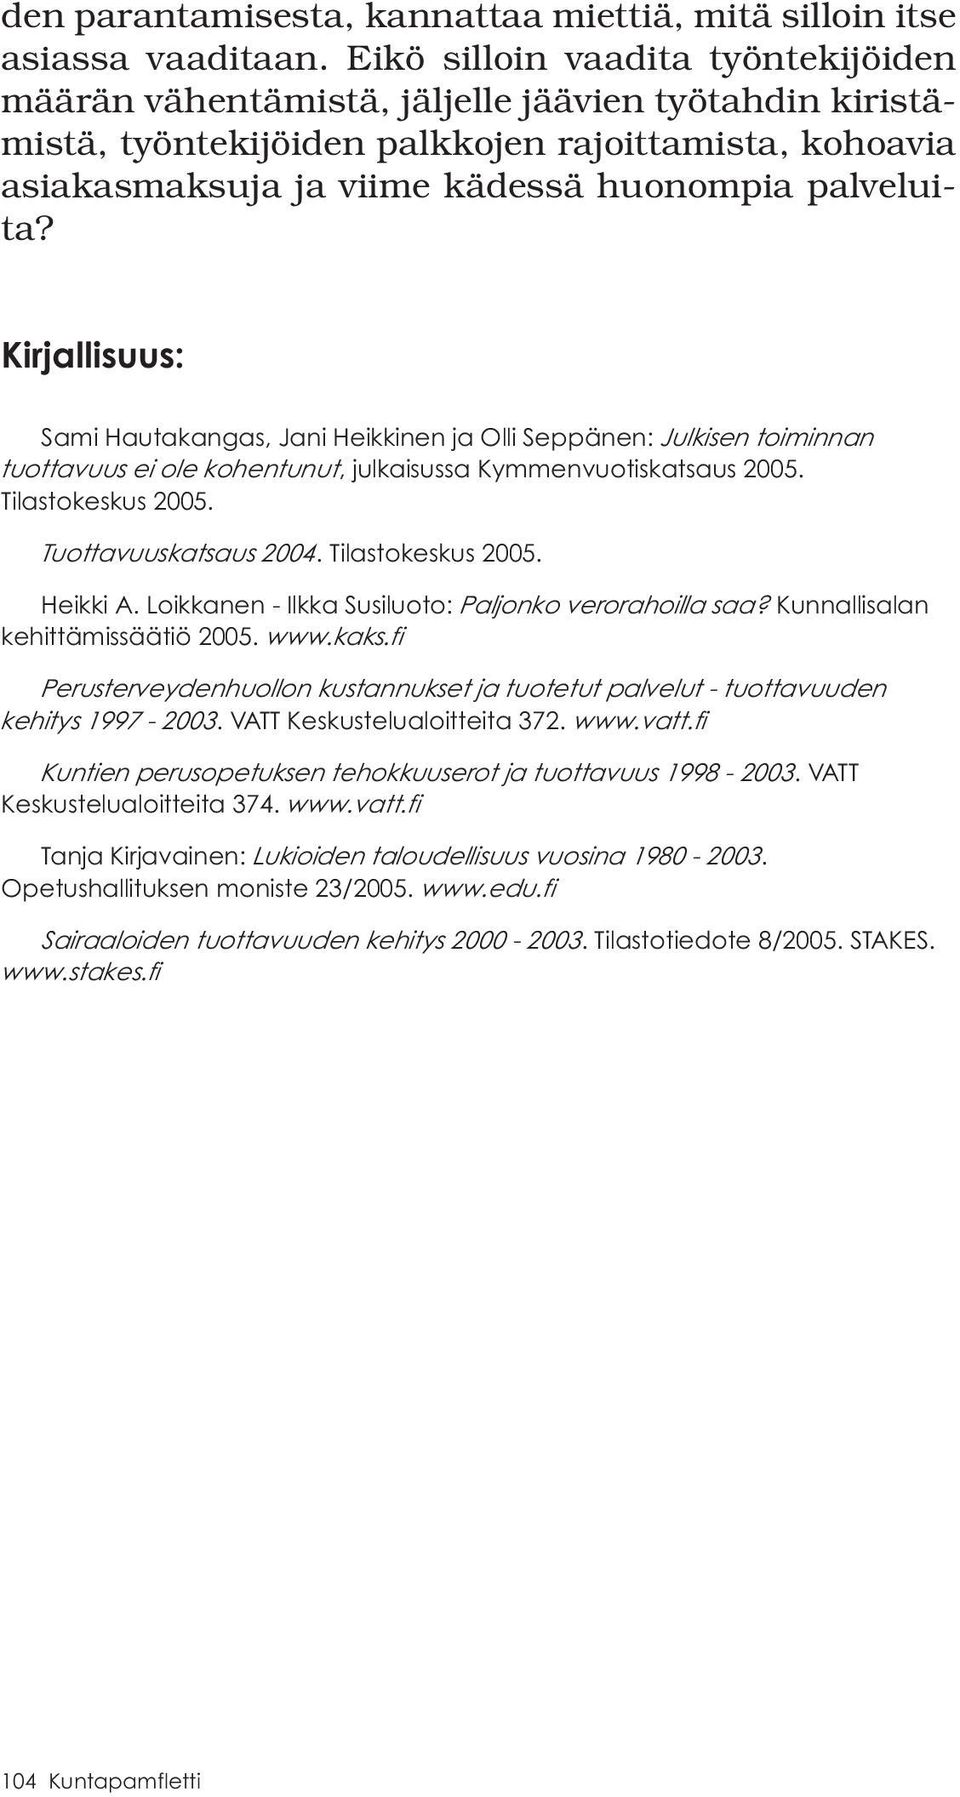 Kirjallisuus: Sami Hautakangas, Jani Heikkinen ja Olli Seppänen: Julkisen toiminnan tuottavuus ei ole kohentunut, julkaisussa Kymmenvuotiskatsaus 2005. Tilastokeskus 2005. Tuottavuuskatsaus 2004.